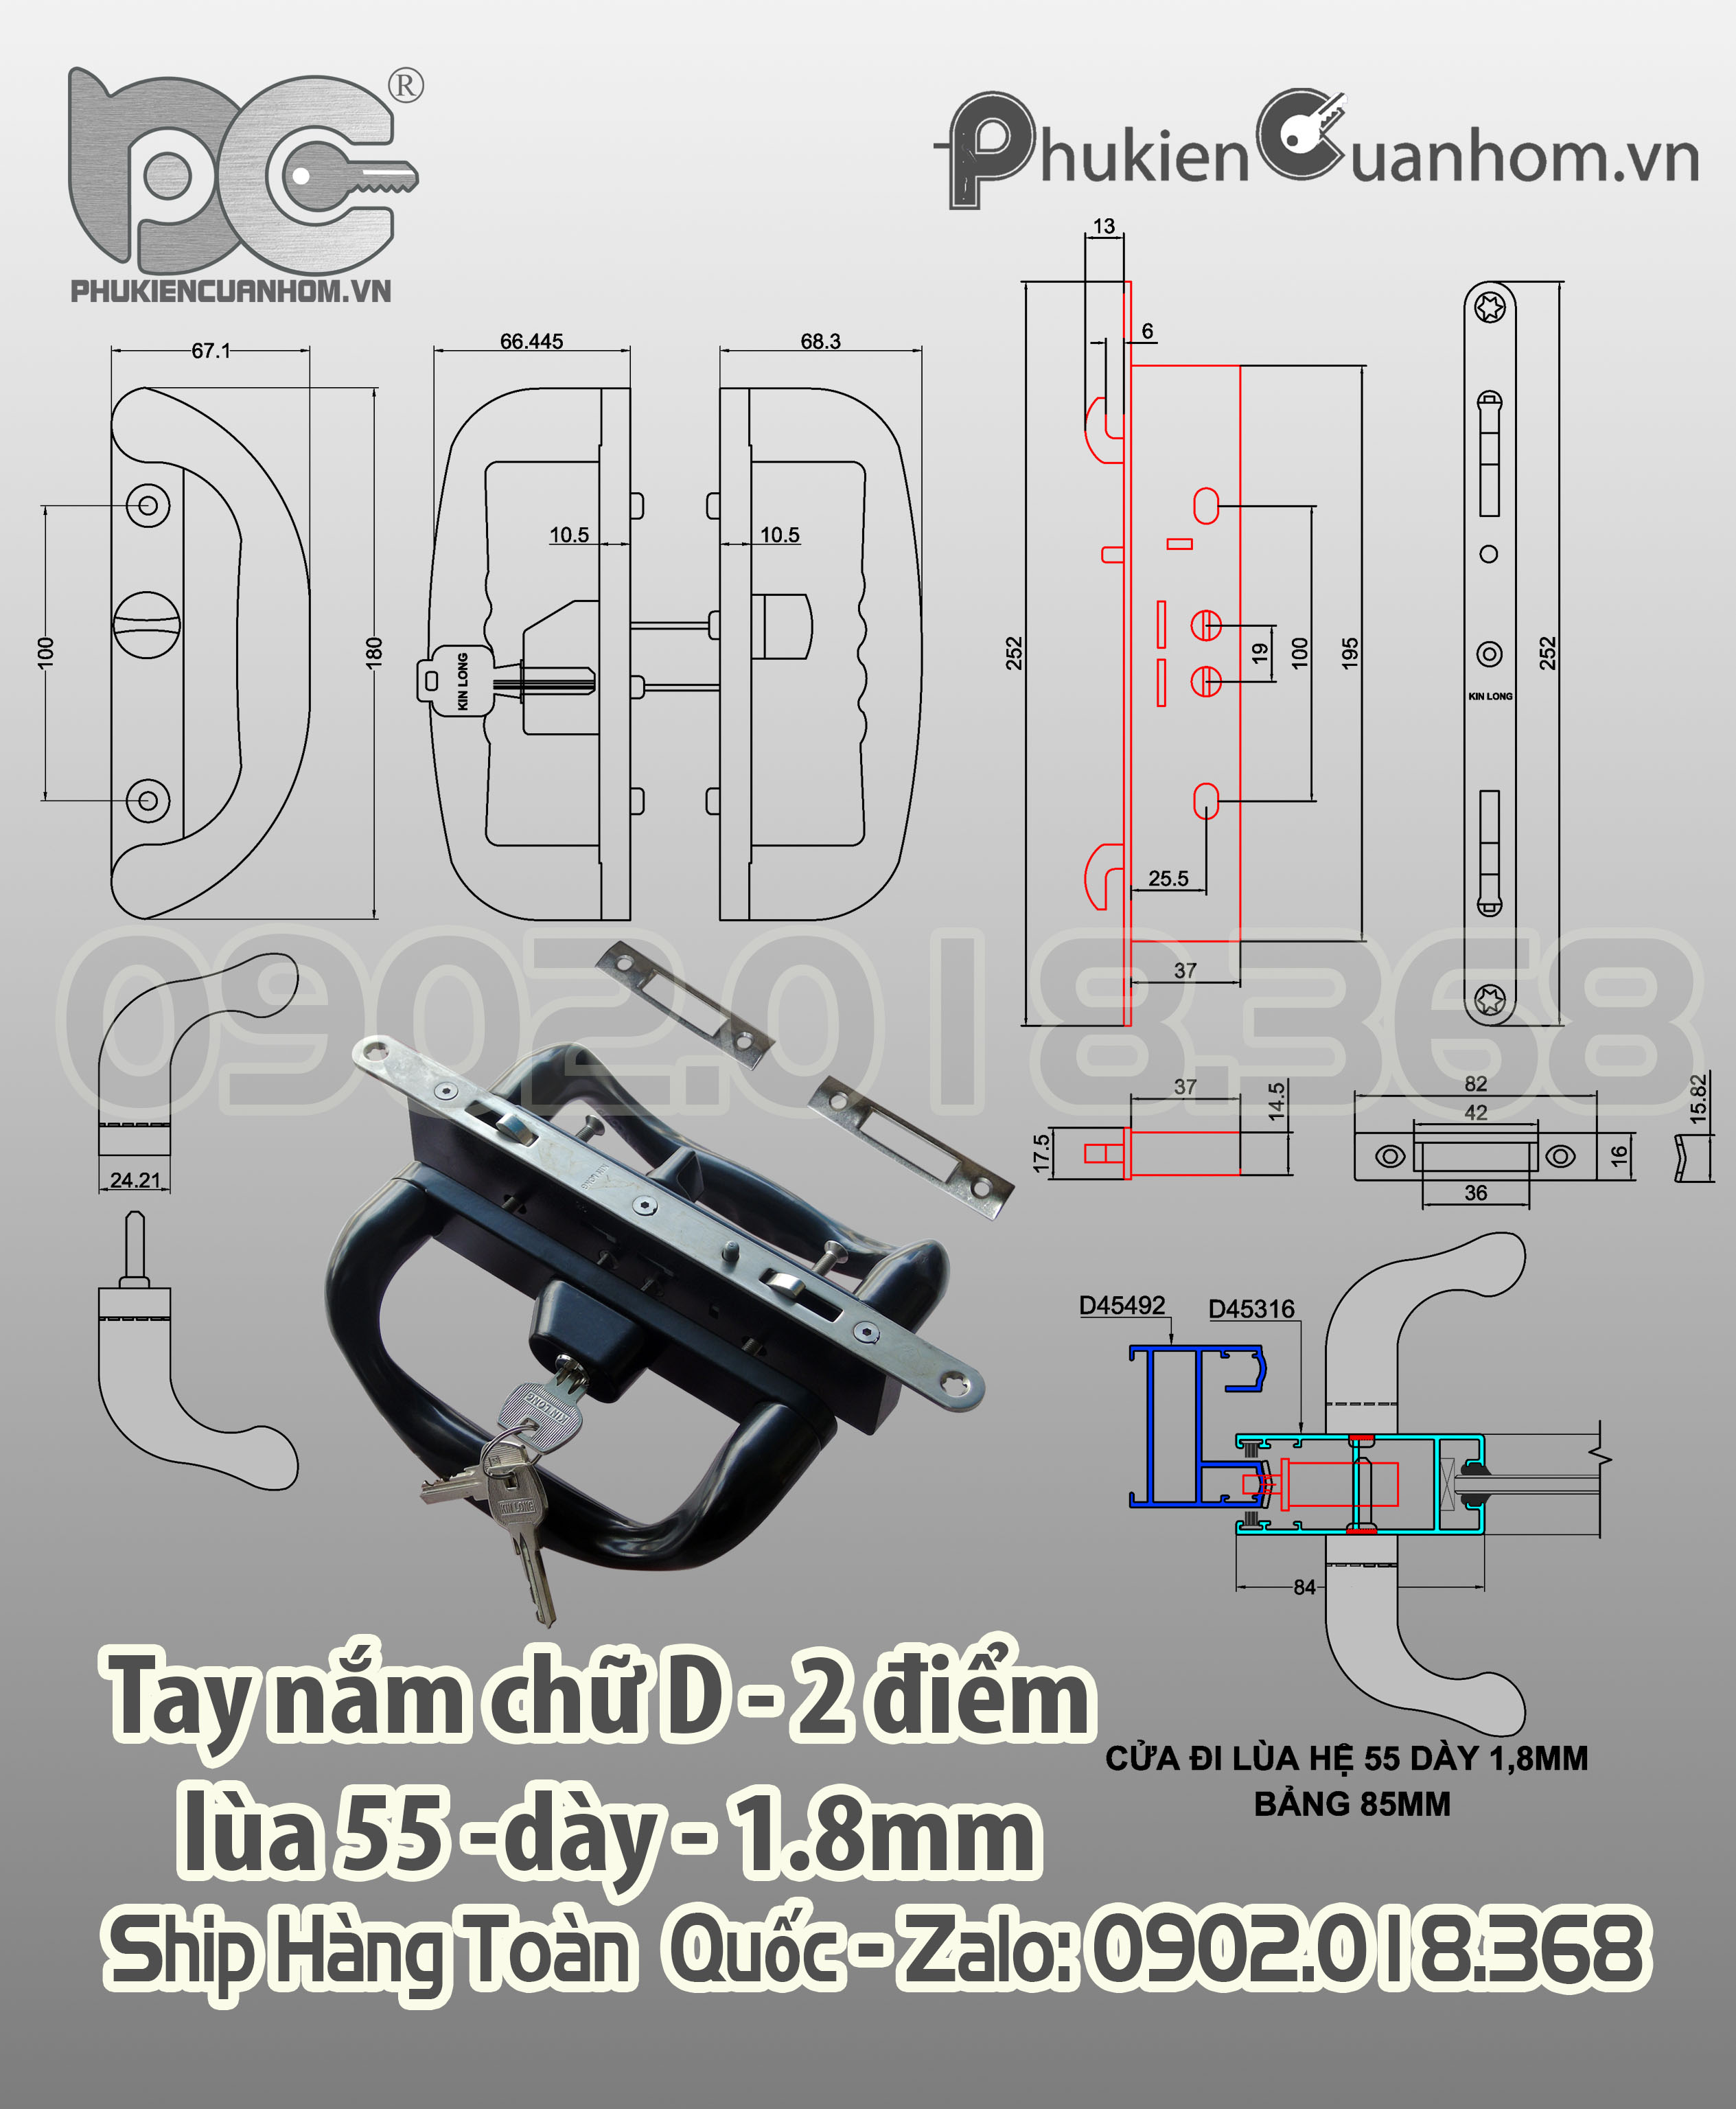 Khóa chữ D cửa lùa có chìa khóa nhôm Xingfa hệ 55 dày 1.8mm bảng 85mm